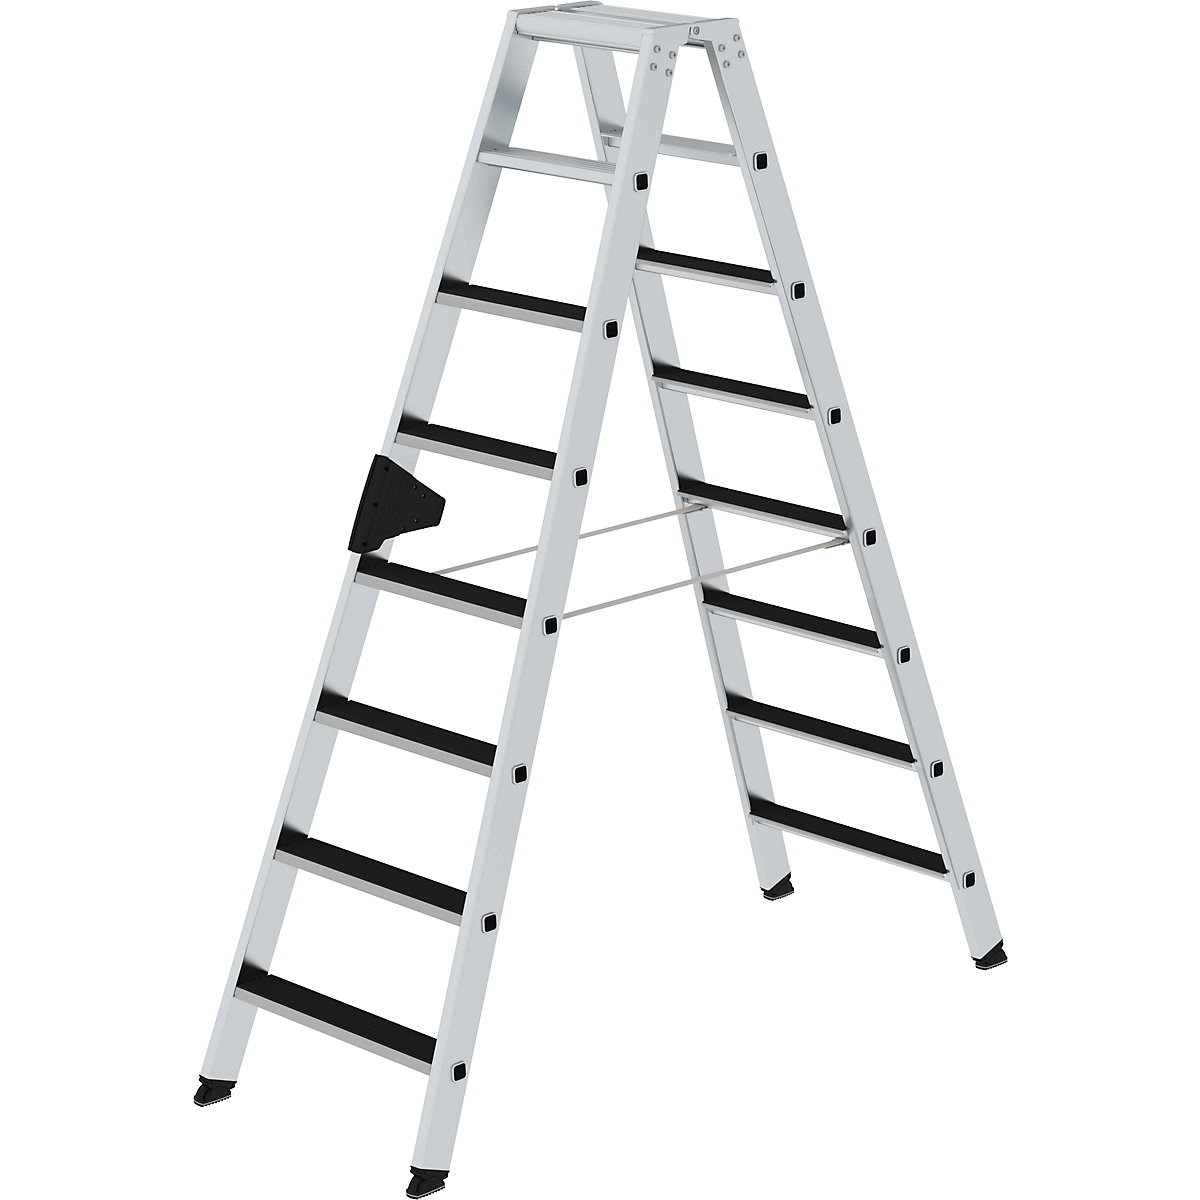 MUNK Stufen-Stehleiter CLIP-STEP, beidseitig begehbar, geriffelt, 2 x 8 Stufen